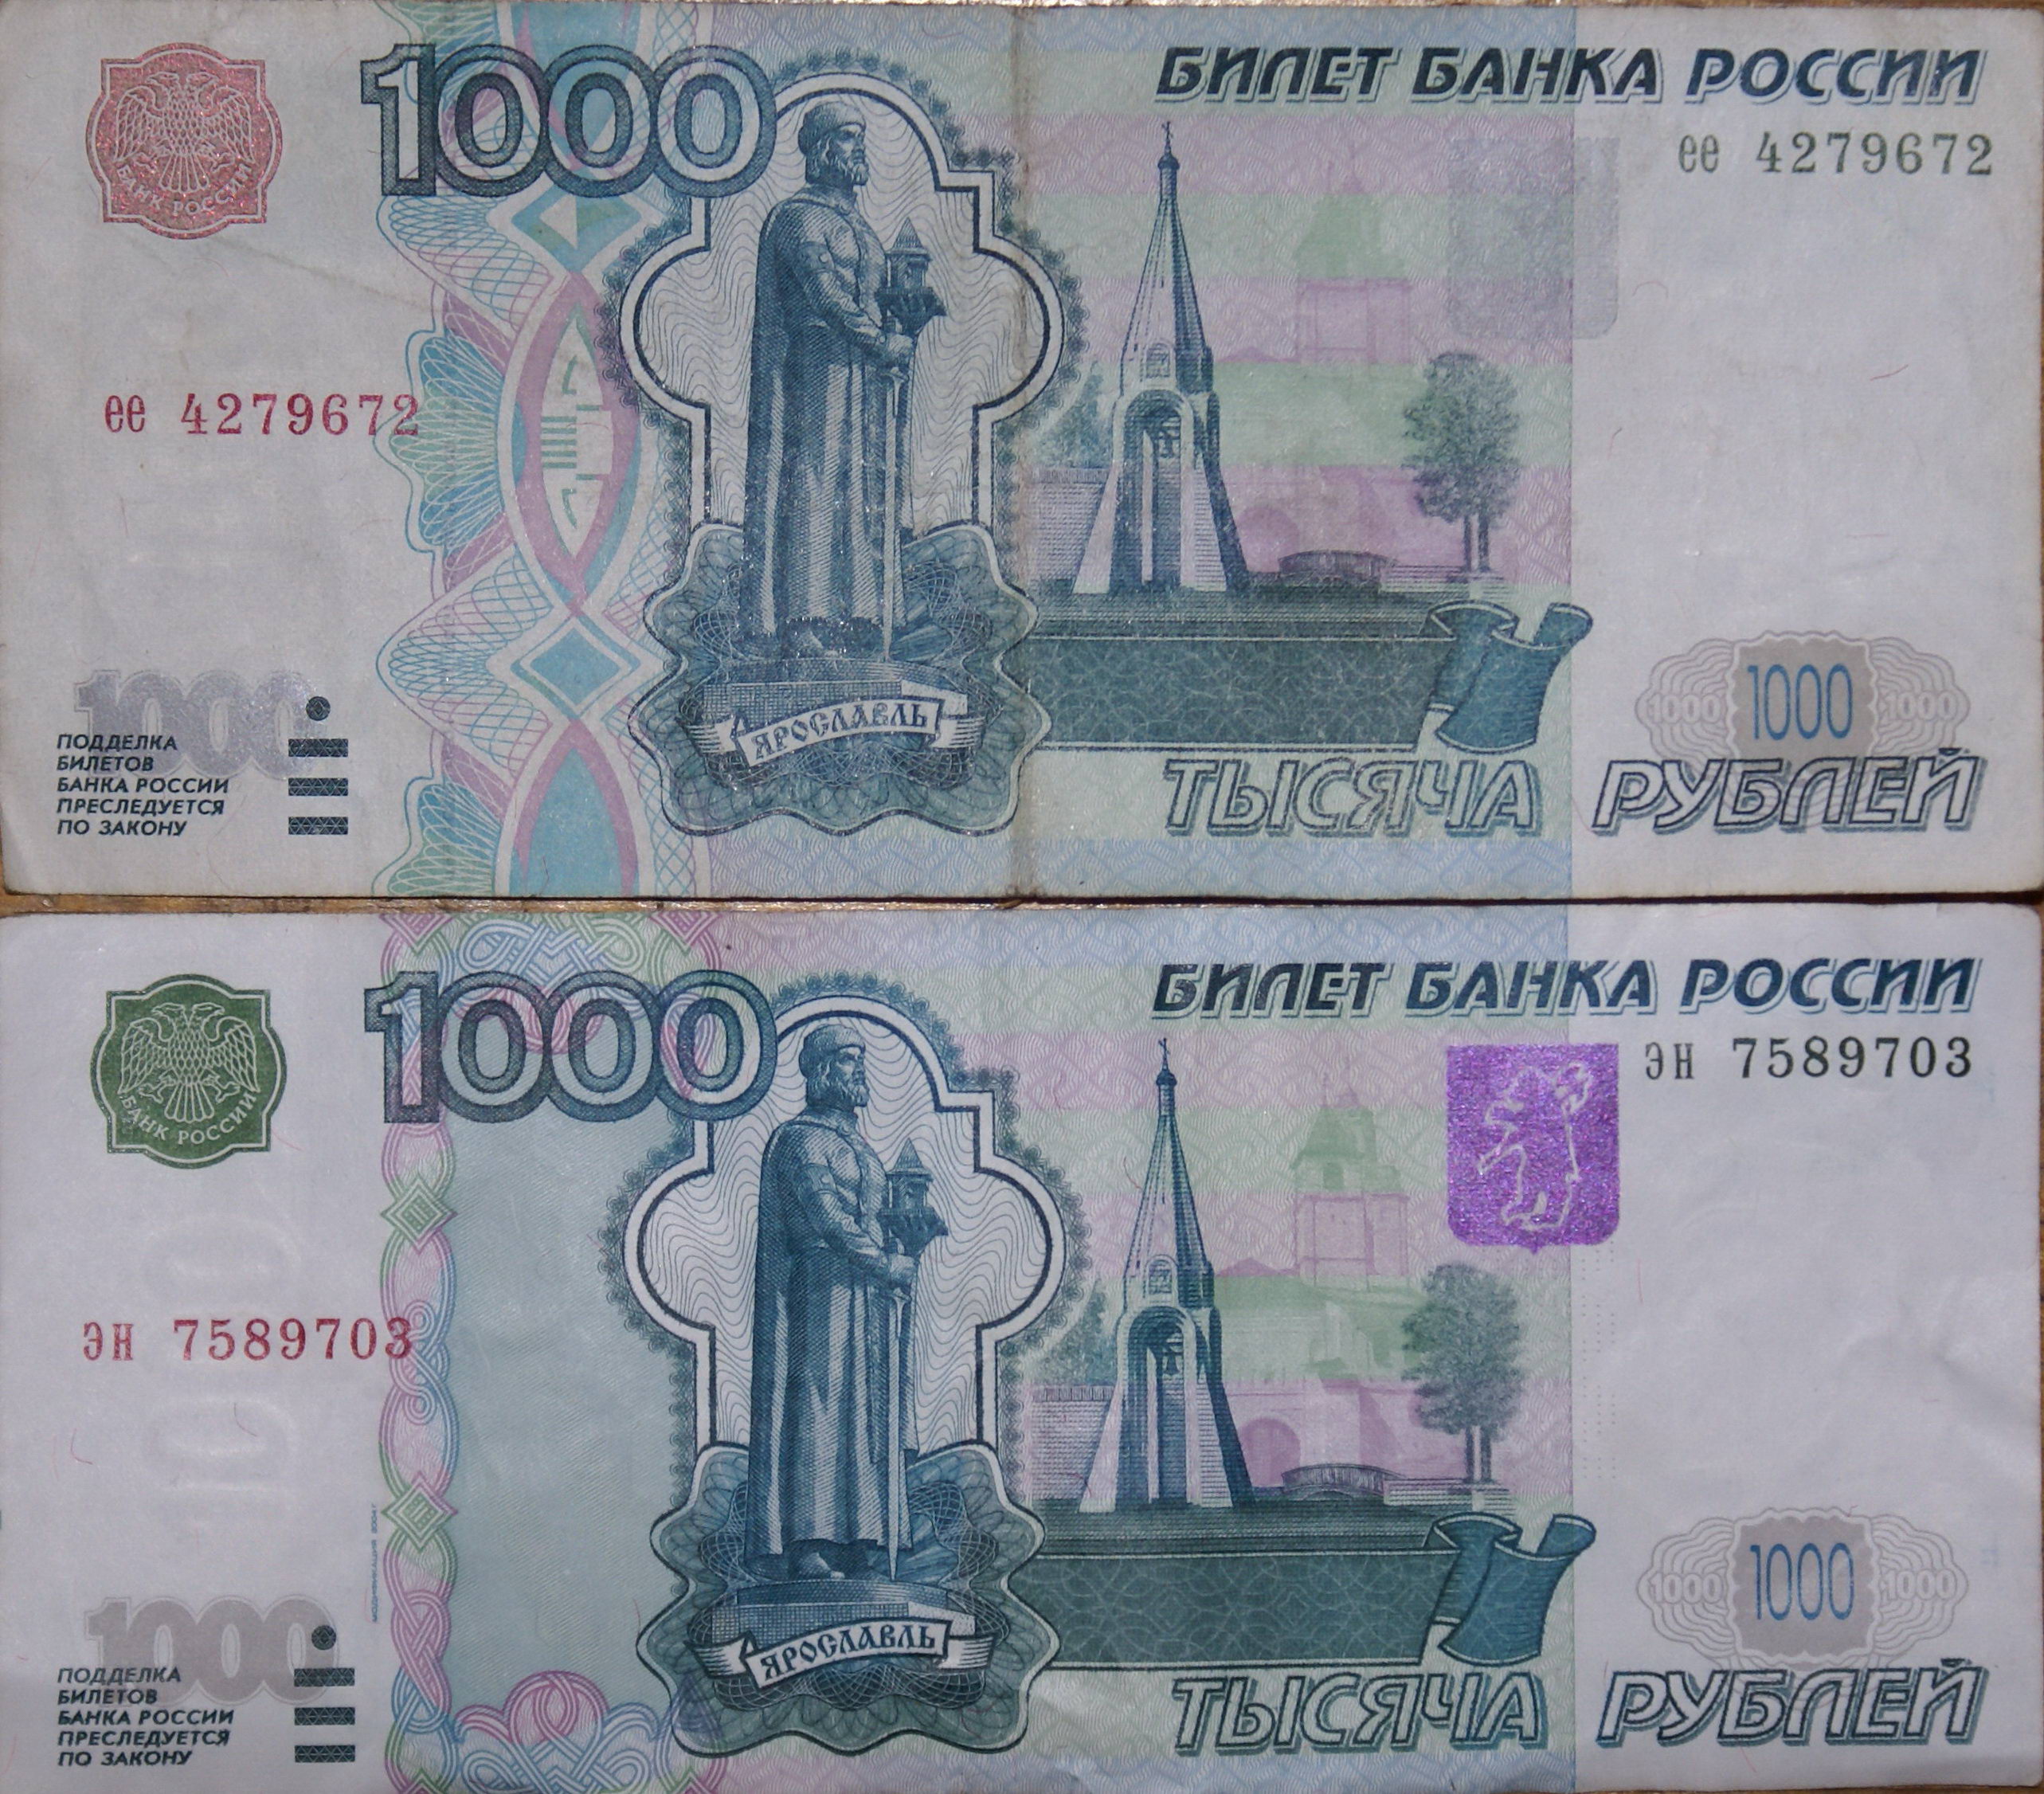 Купюра 1.000 руб. Тысячная купюра 1997 года. Купюра 1000 р 1997 года. Купюра 1000 рублей старого образца 1997. 1000 Купюра 1997 года старого образца.